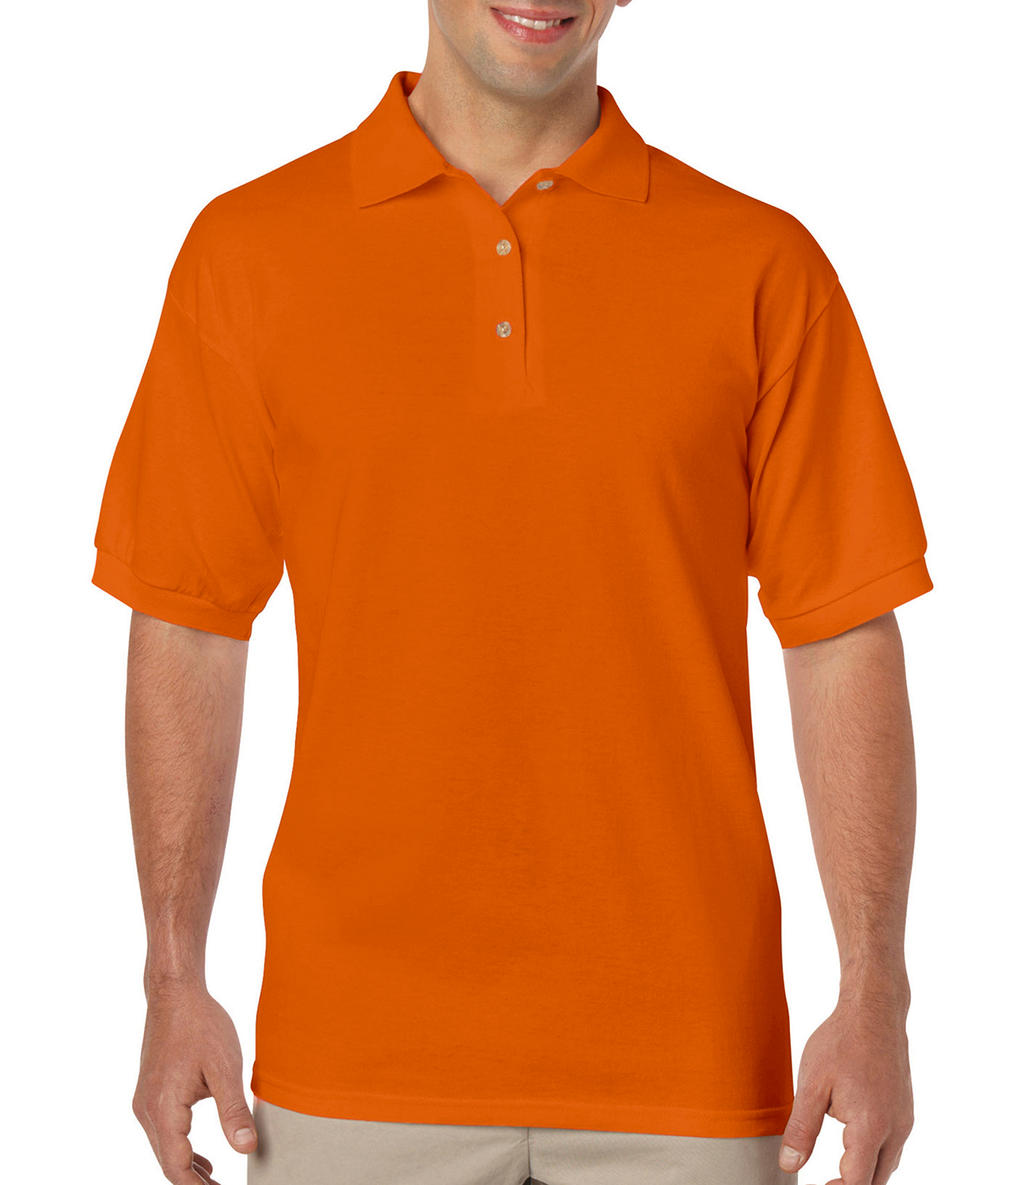 Pánska polokošela DryBlend Jersey - safety orange